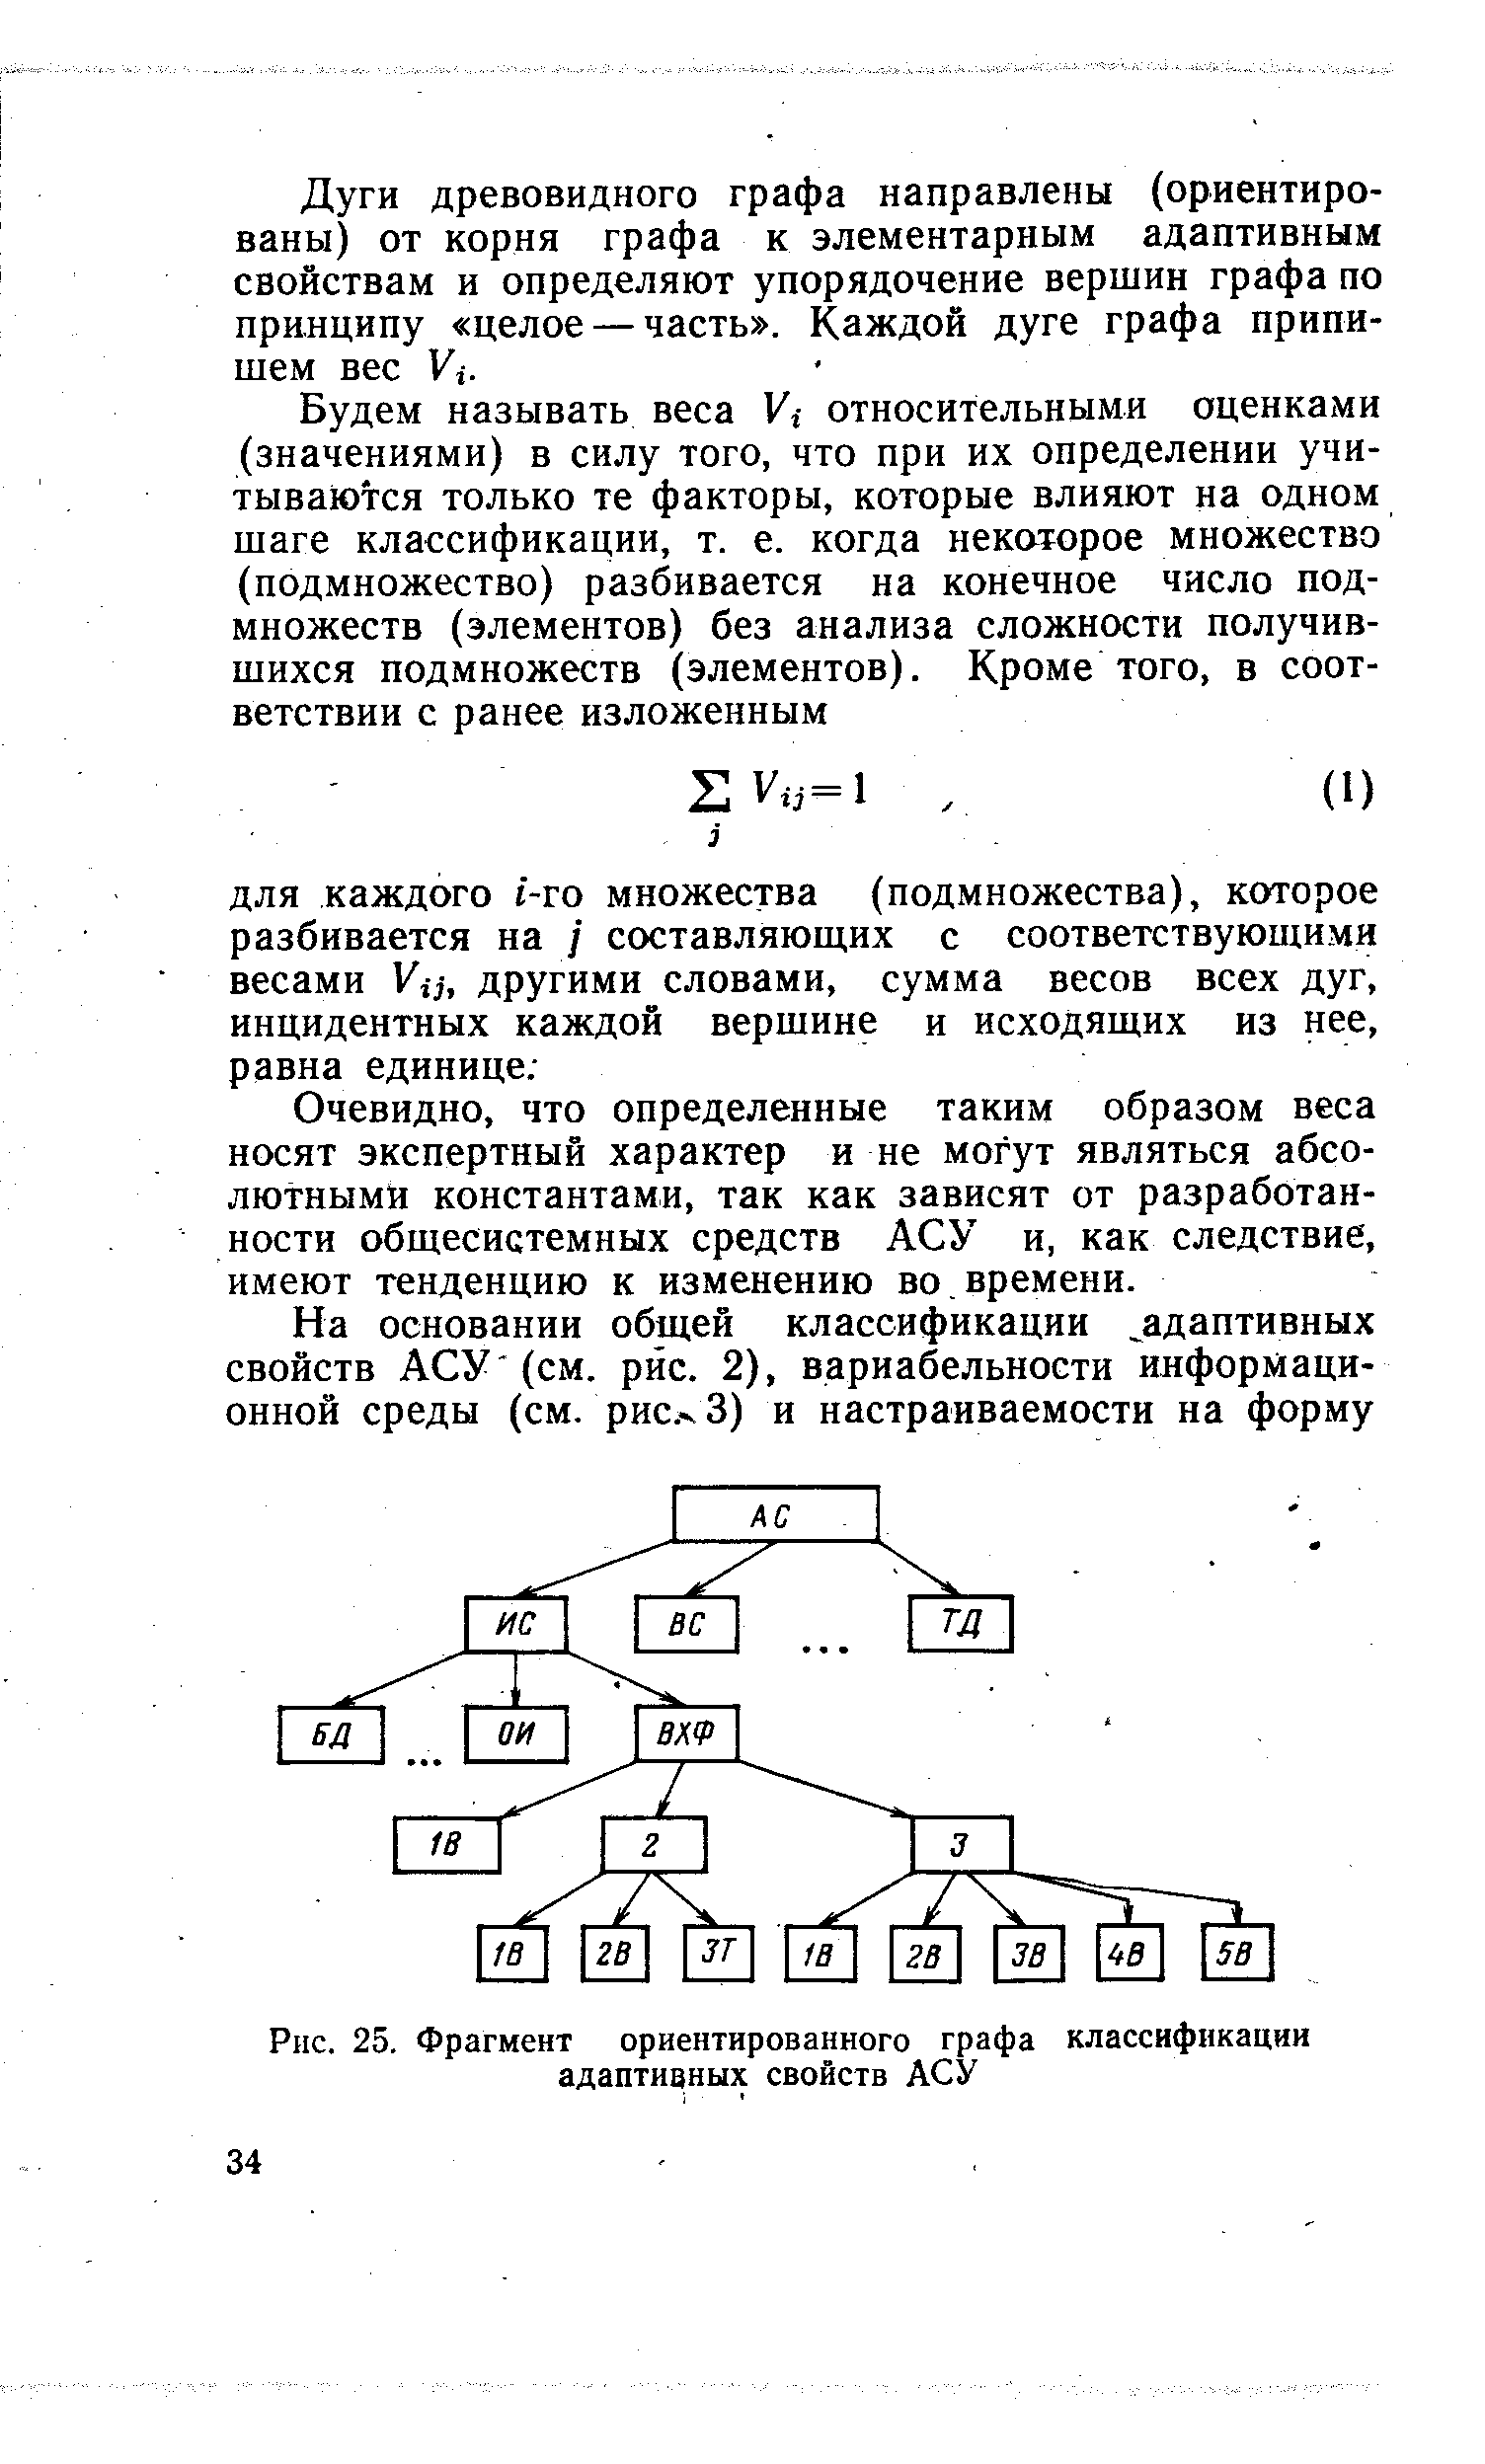 Рис. 25. Фрагмент ориентированного графа классификации адаптивных свойств АСУ
